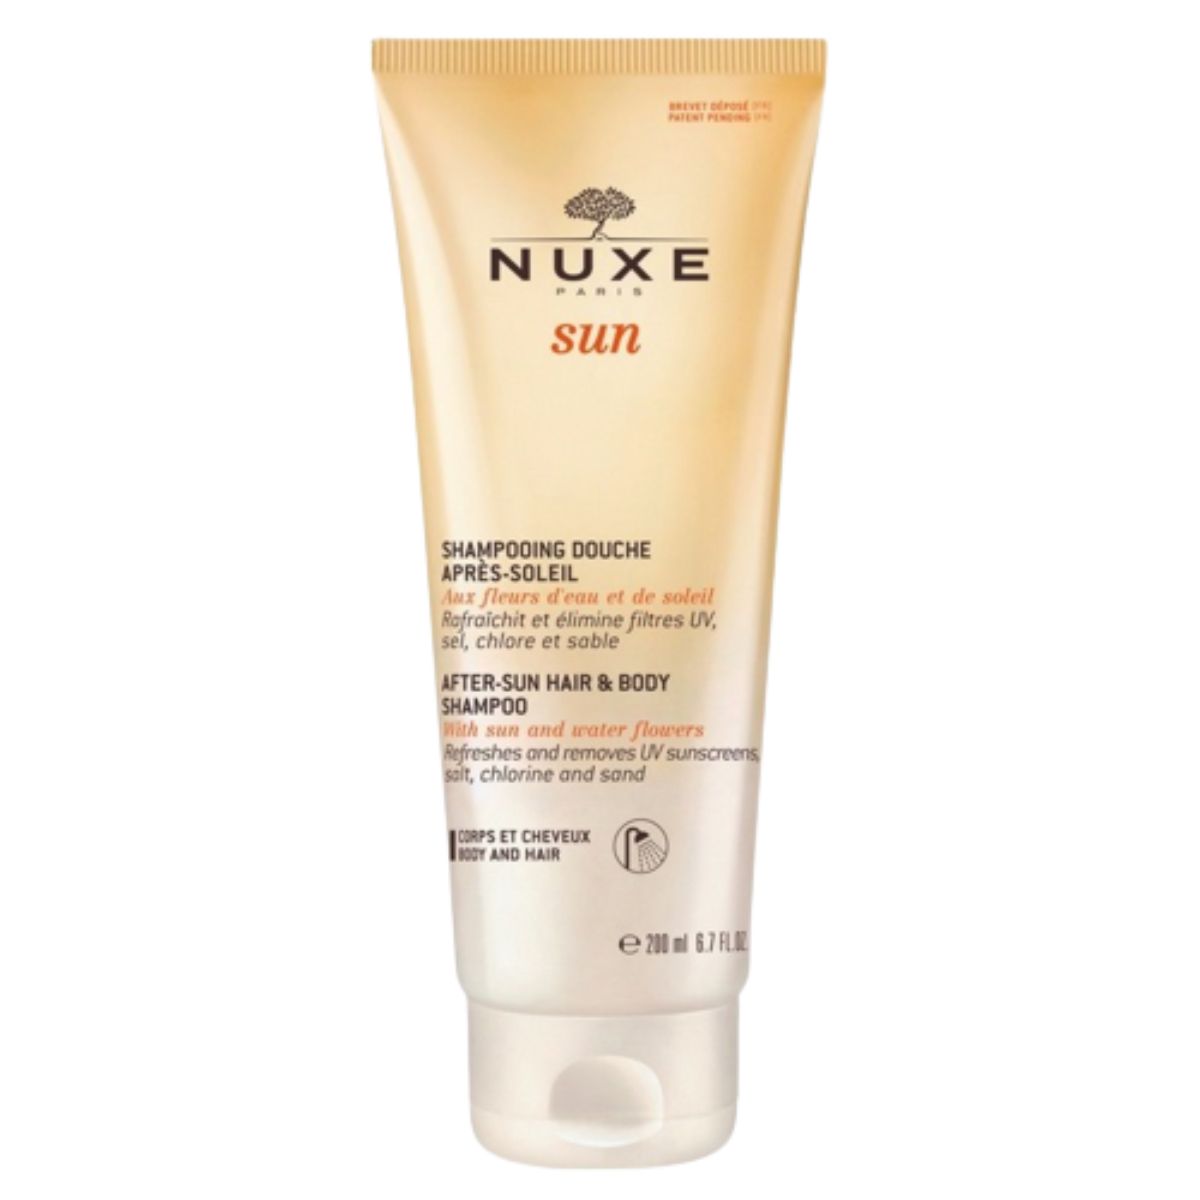 Nuxe Sun After Sun Hair & Body Shampoo 100ml